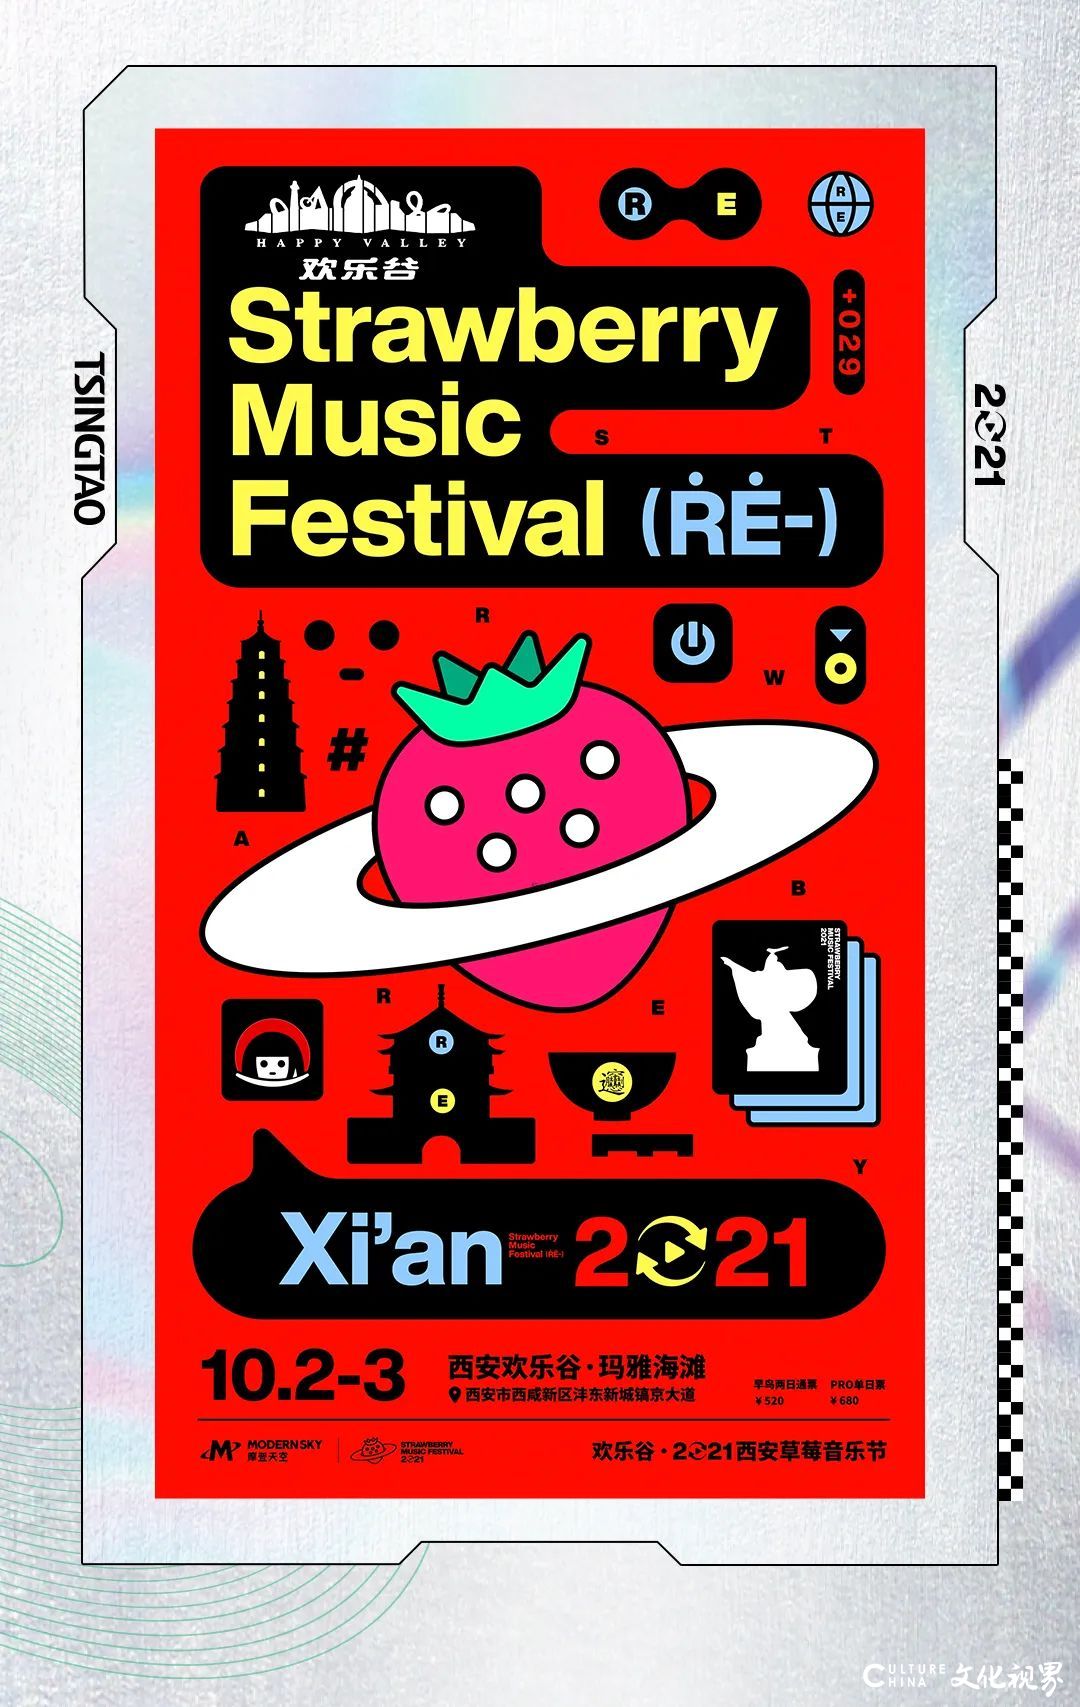 青岛啤酒x草莓音乐节西安站即将嗨翻国庆假期